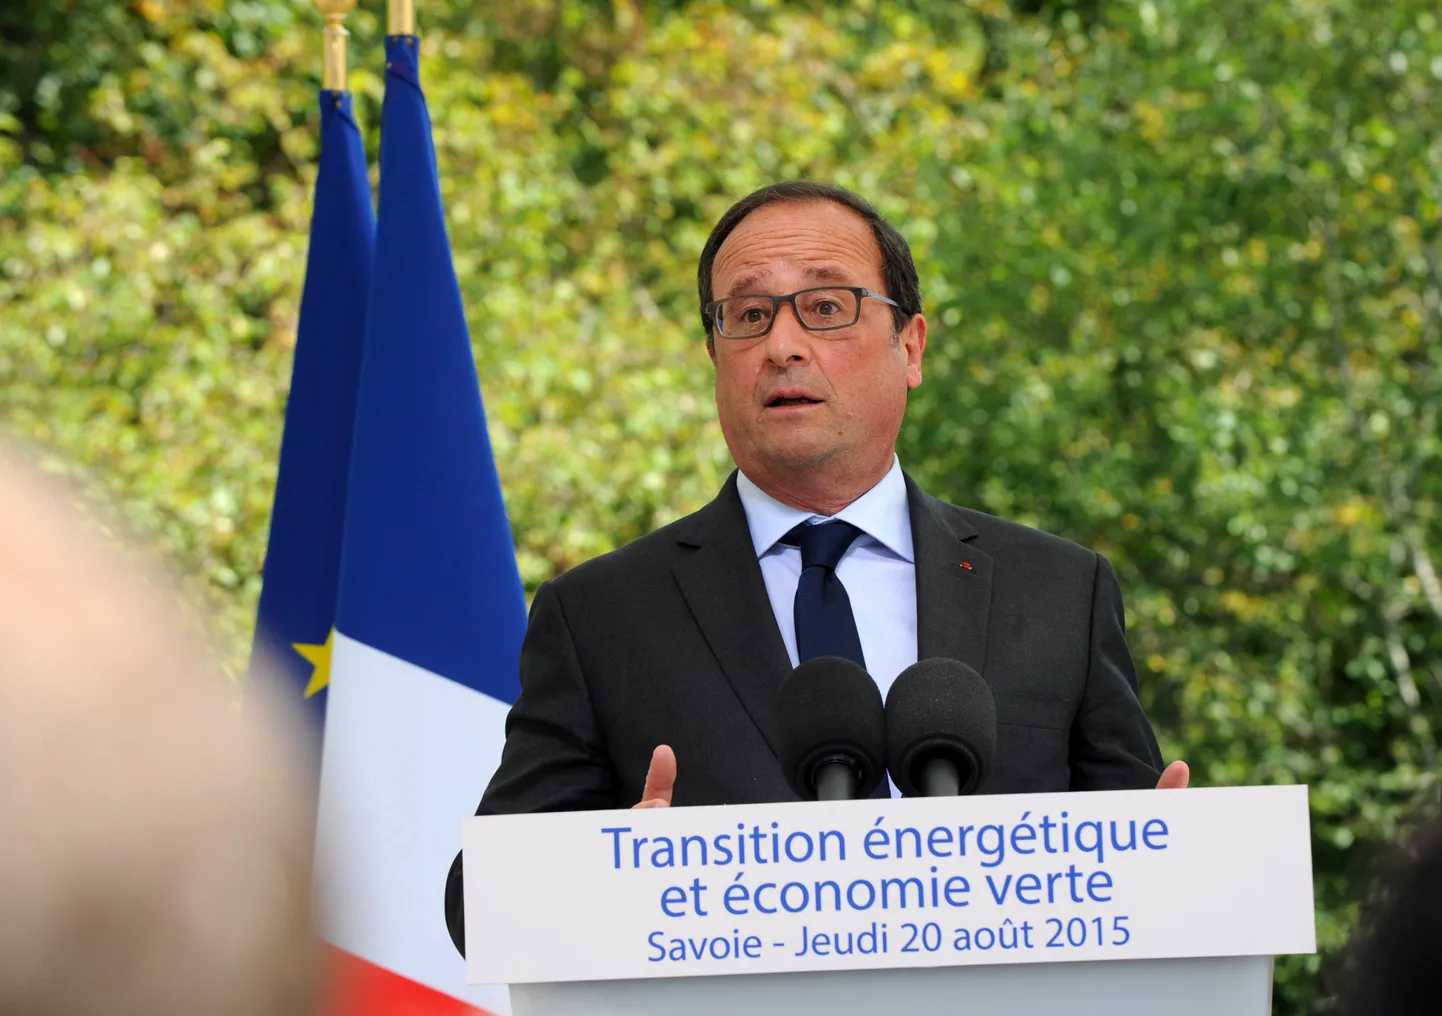 Hollande tänasel energiateemalisesl pressikonverentsil